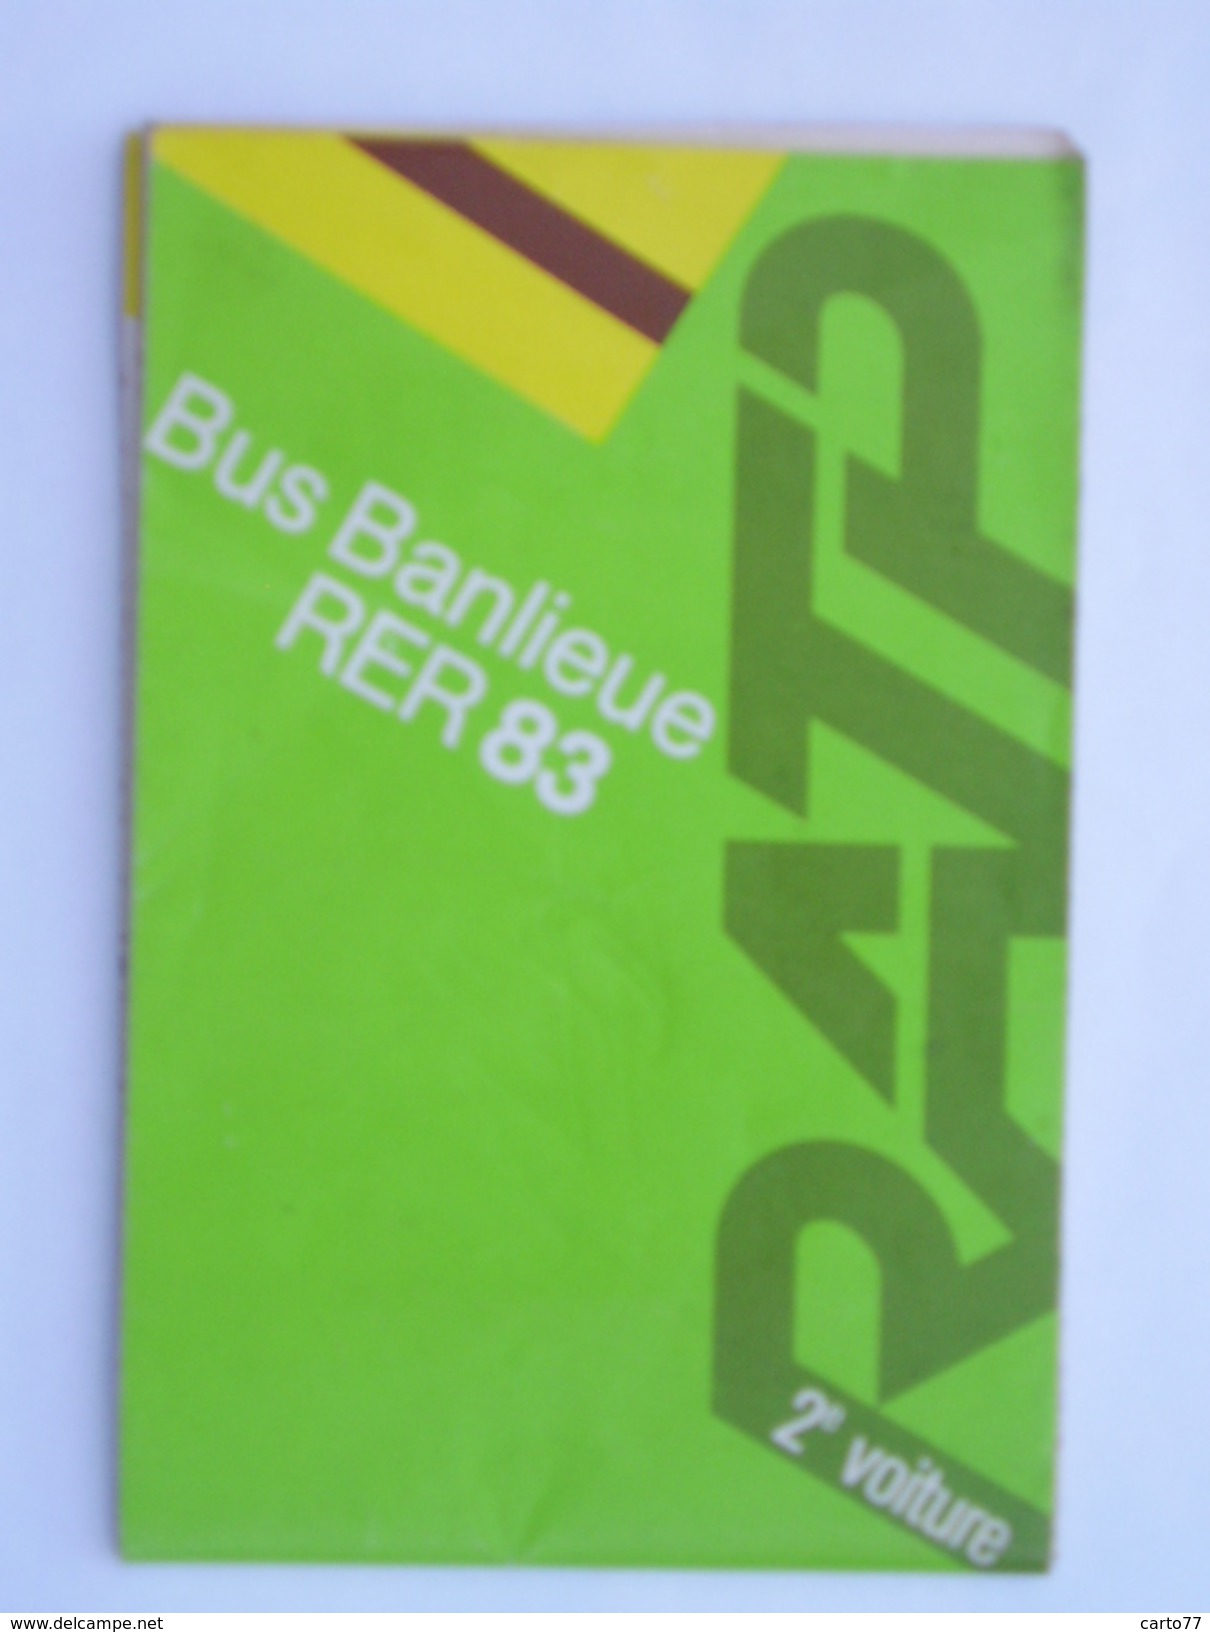 FRANCE Carte Du Réseau RATP Bus & RER Banlieue 1983 - Europa